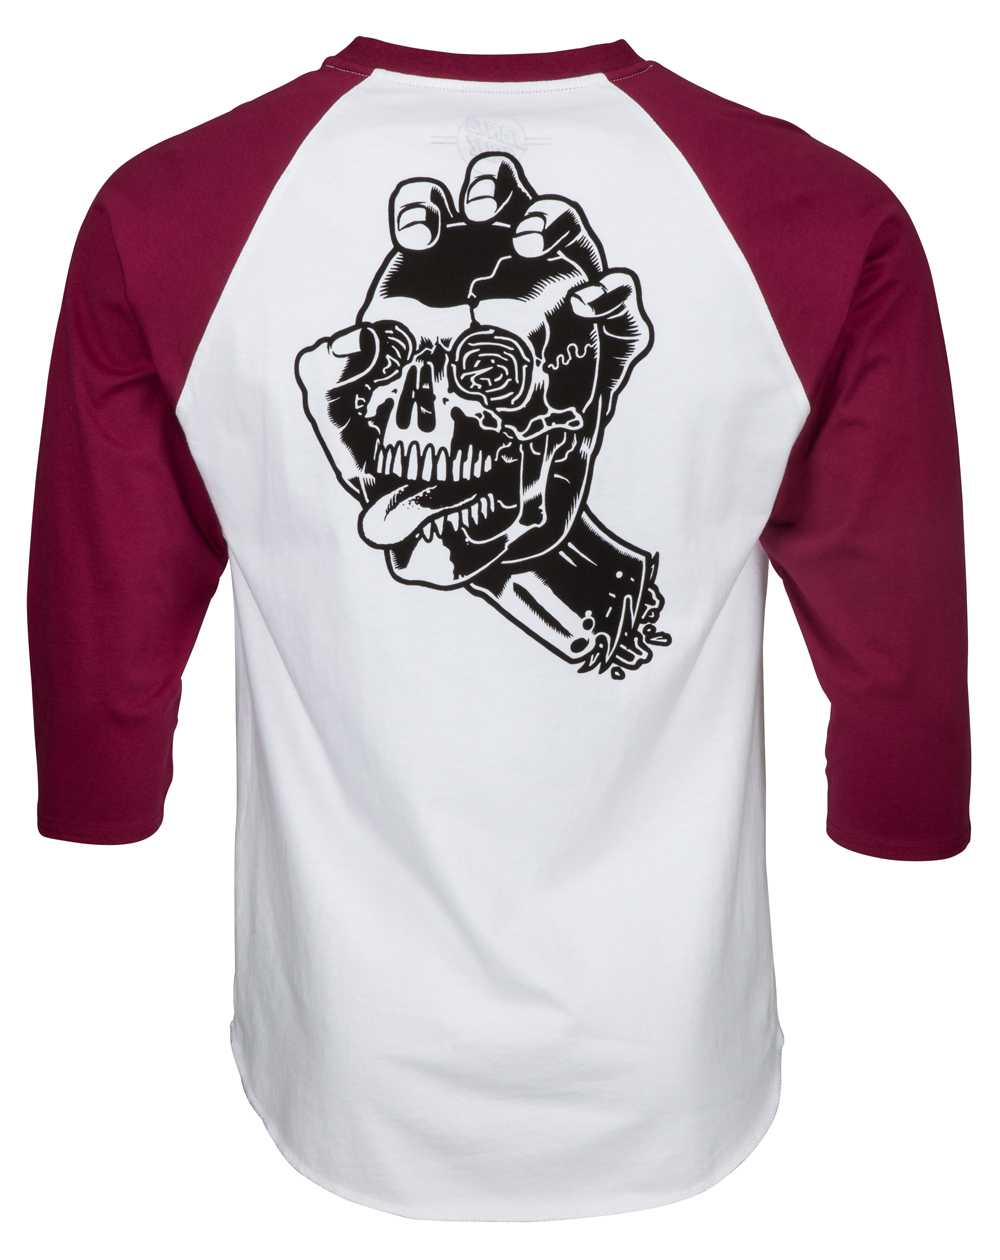 Santa Cruz Men's T-Shirt Screaming Skull Baseball Burgundy/White